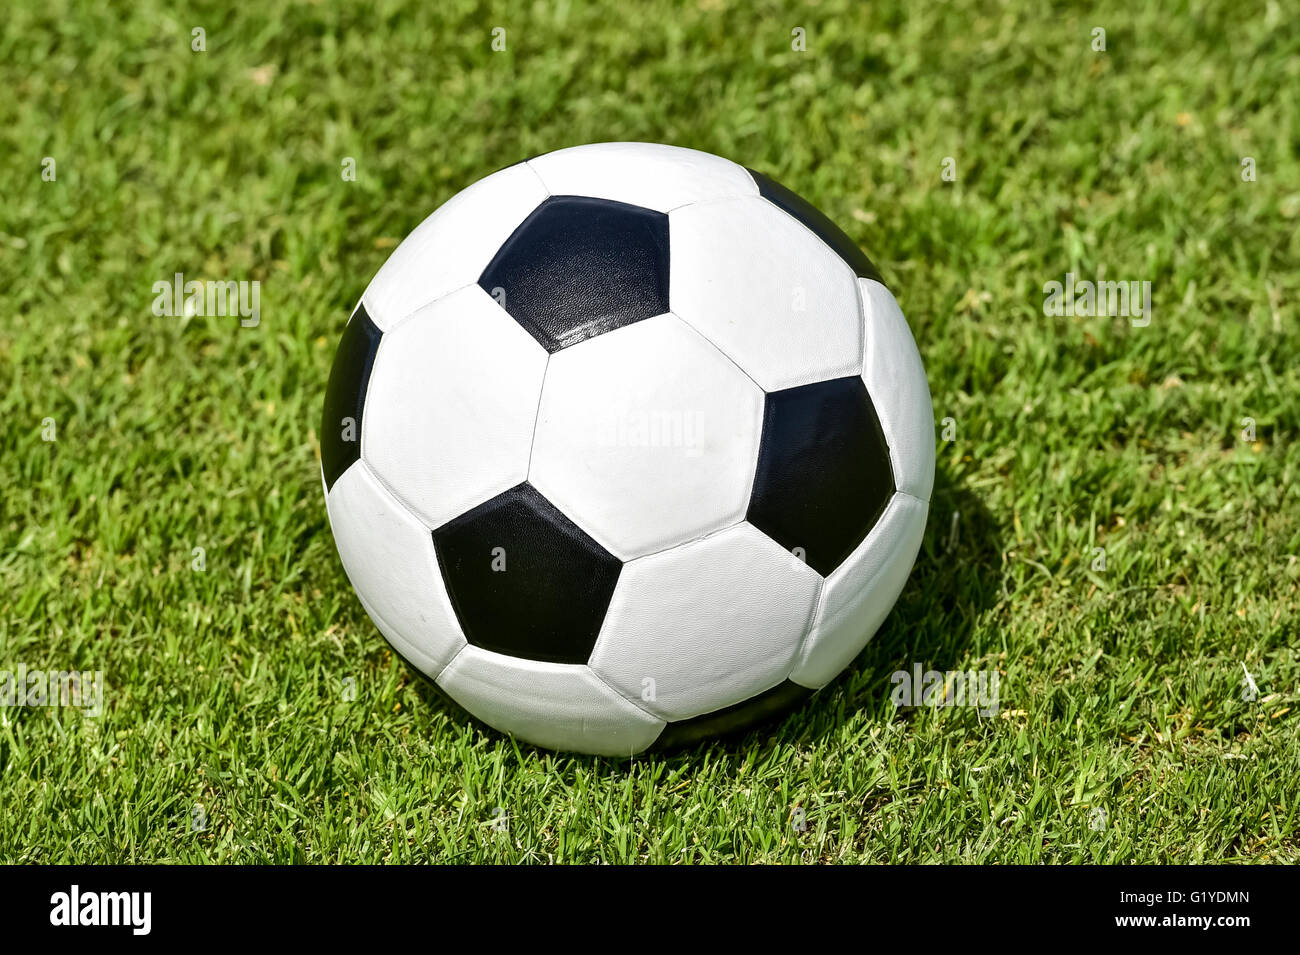 Blanc noir en cuir, soccer ball on lawn Banque D'Images